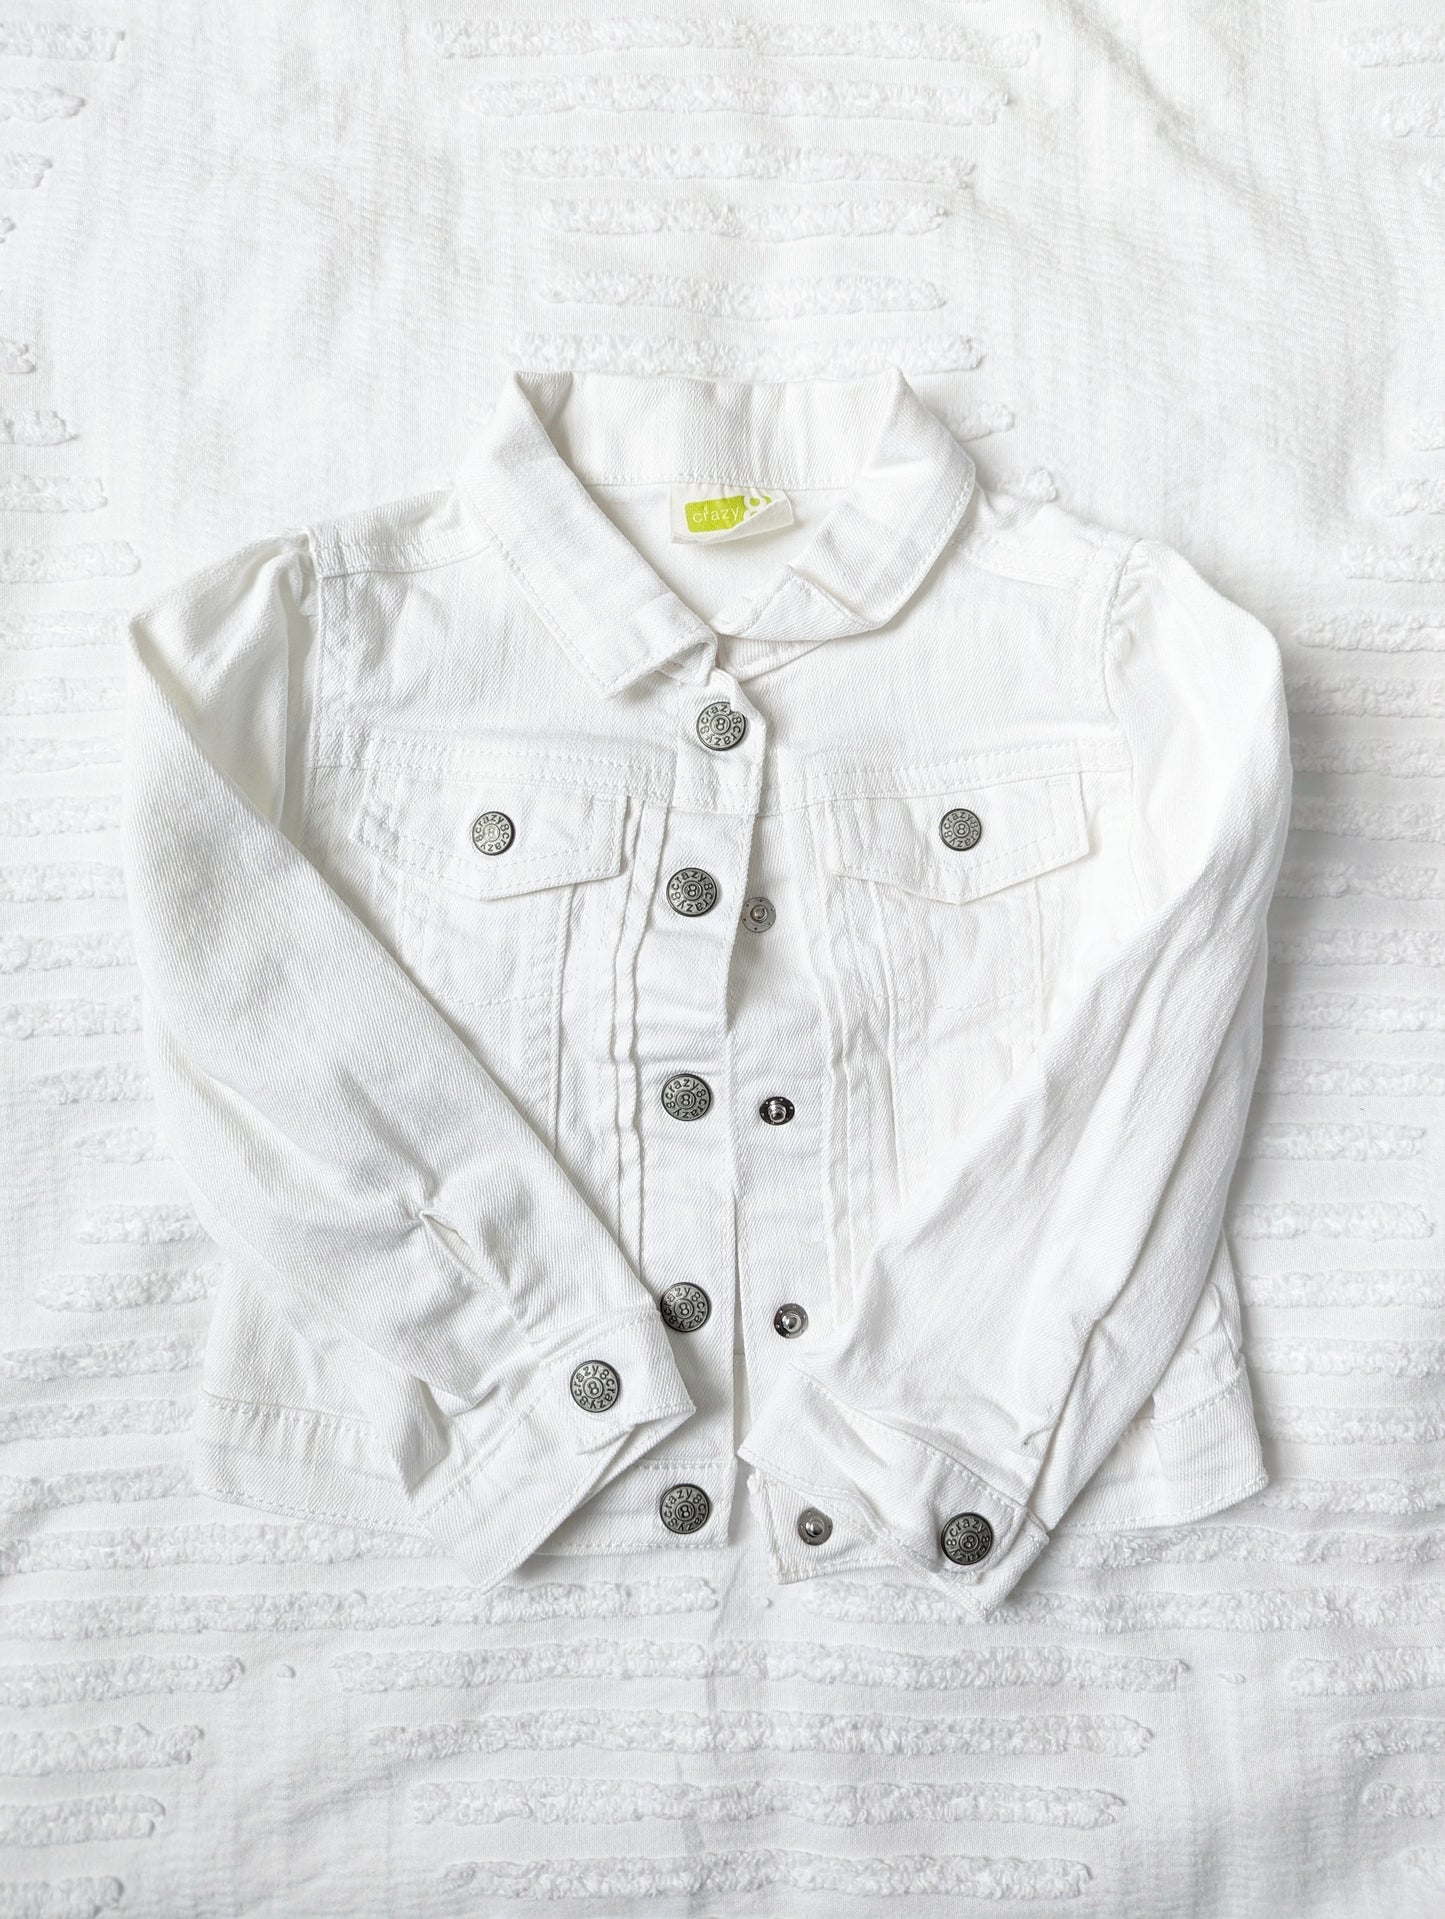 Girls 3T - Crazy 8 White Button Jean Jacket